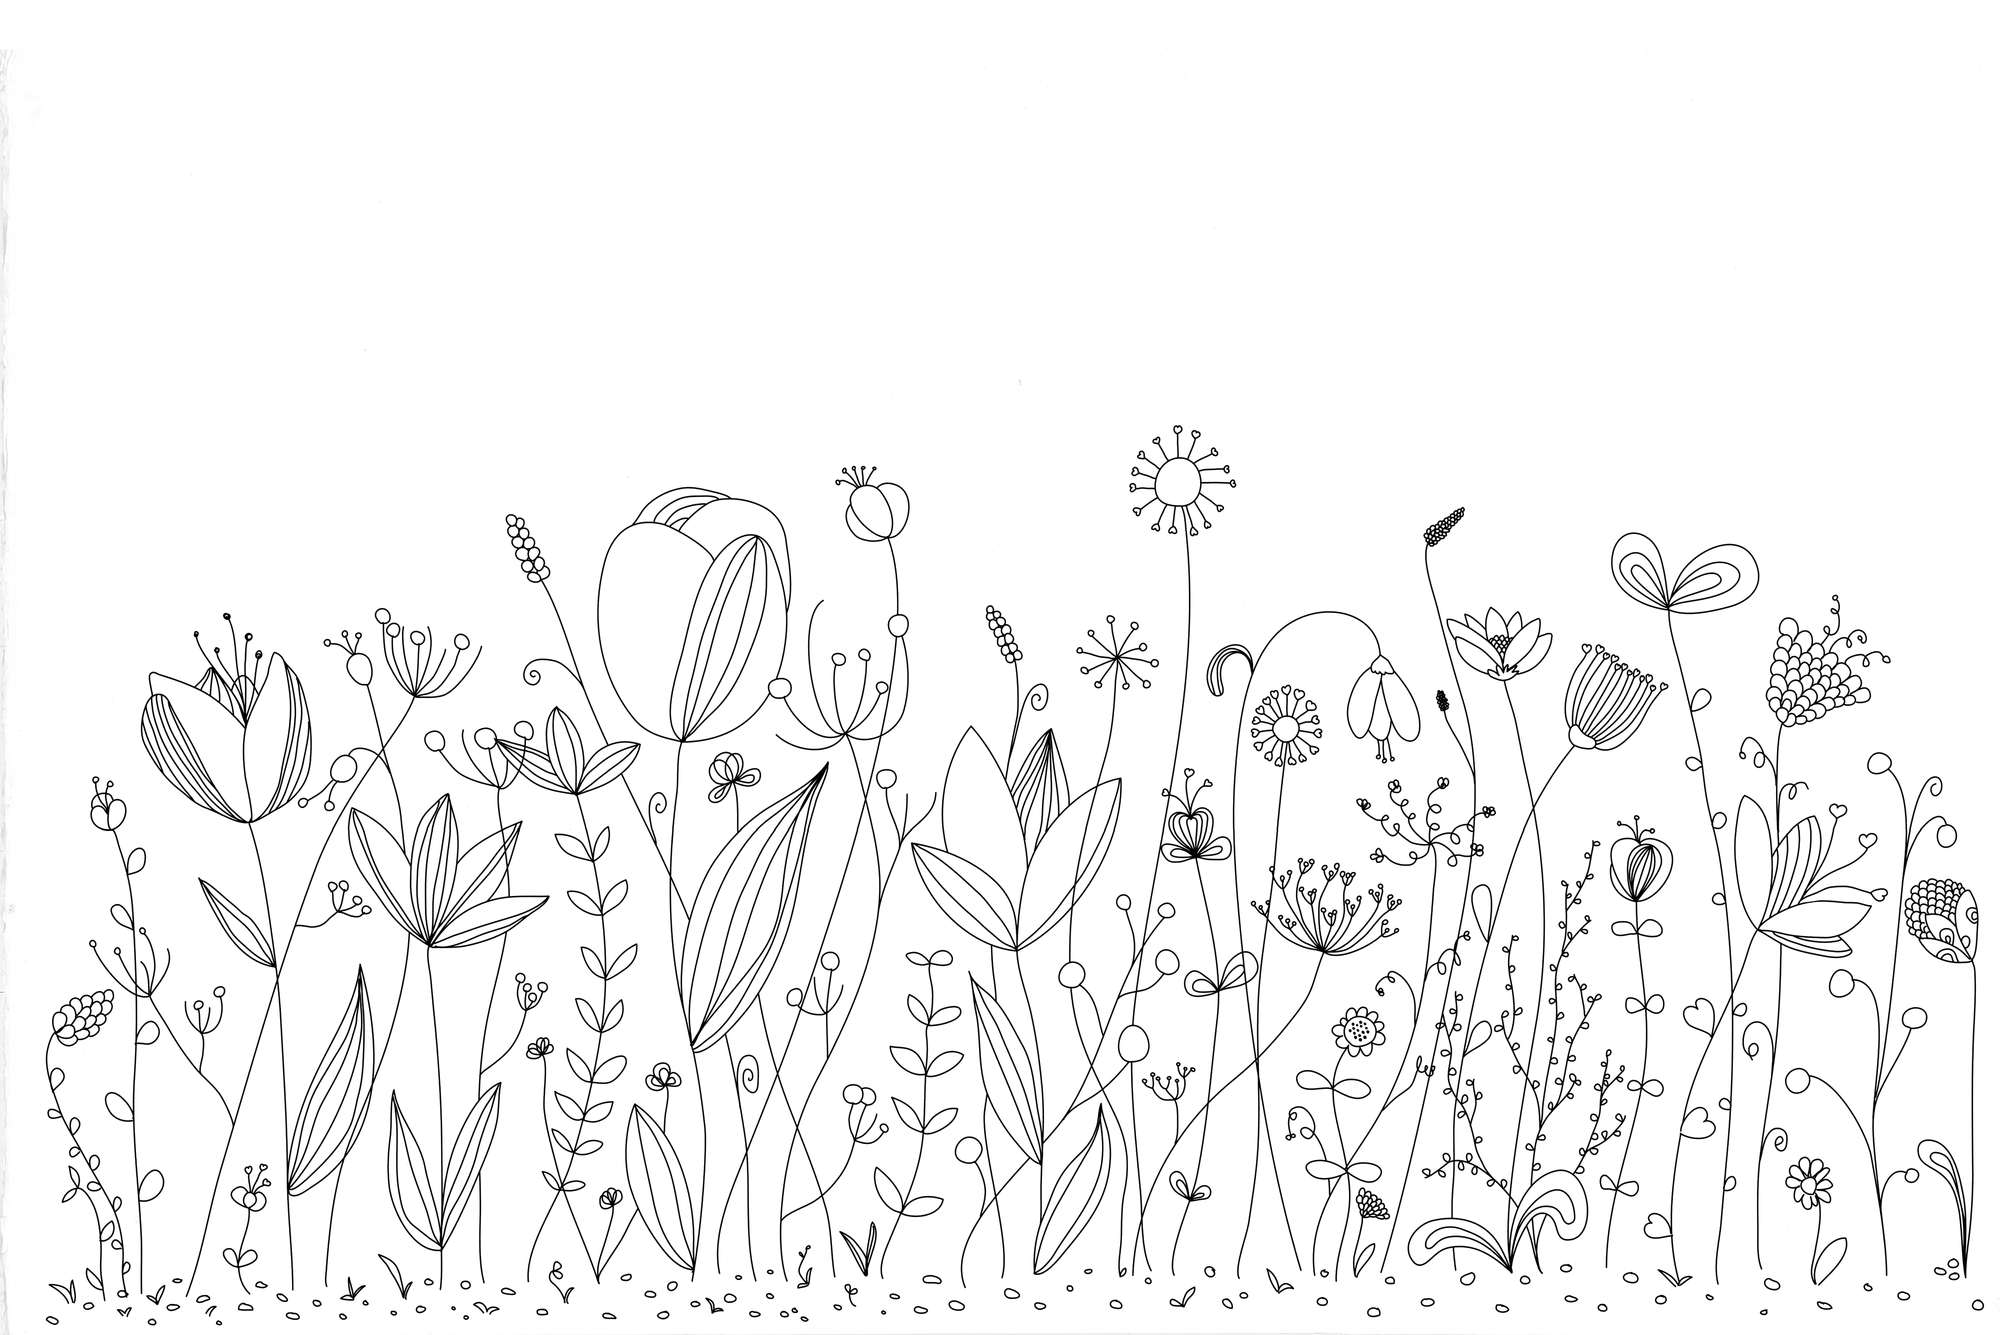             Kinder Fototapete mit schwarz weiß gezeichneten Blumen auf Perlmutt Glattvlies
        